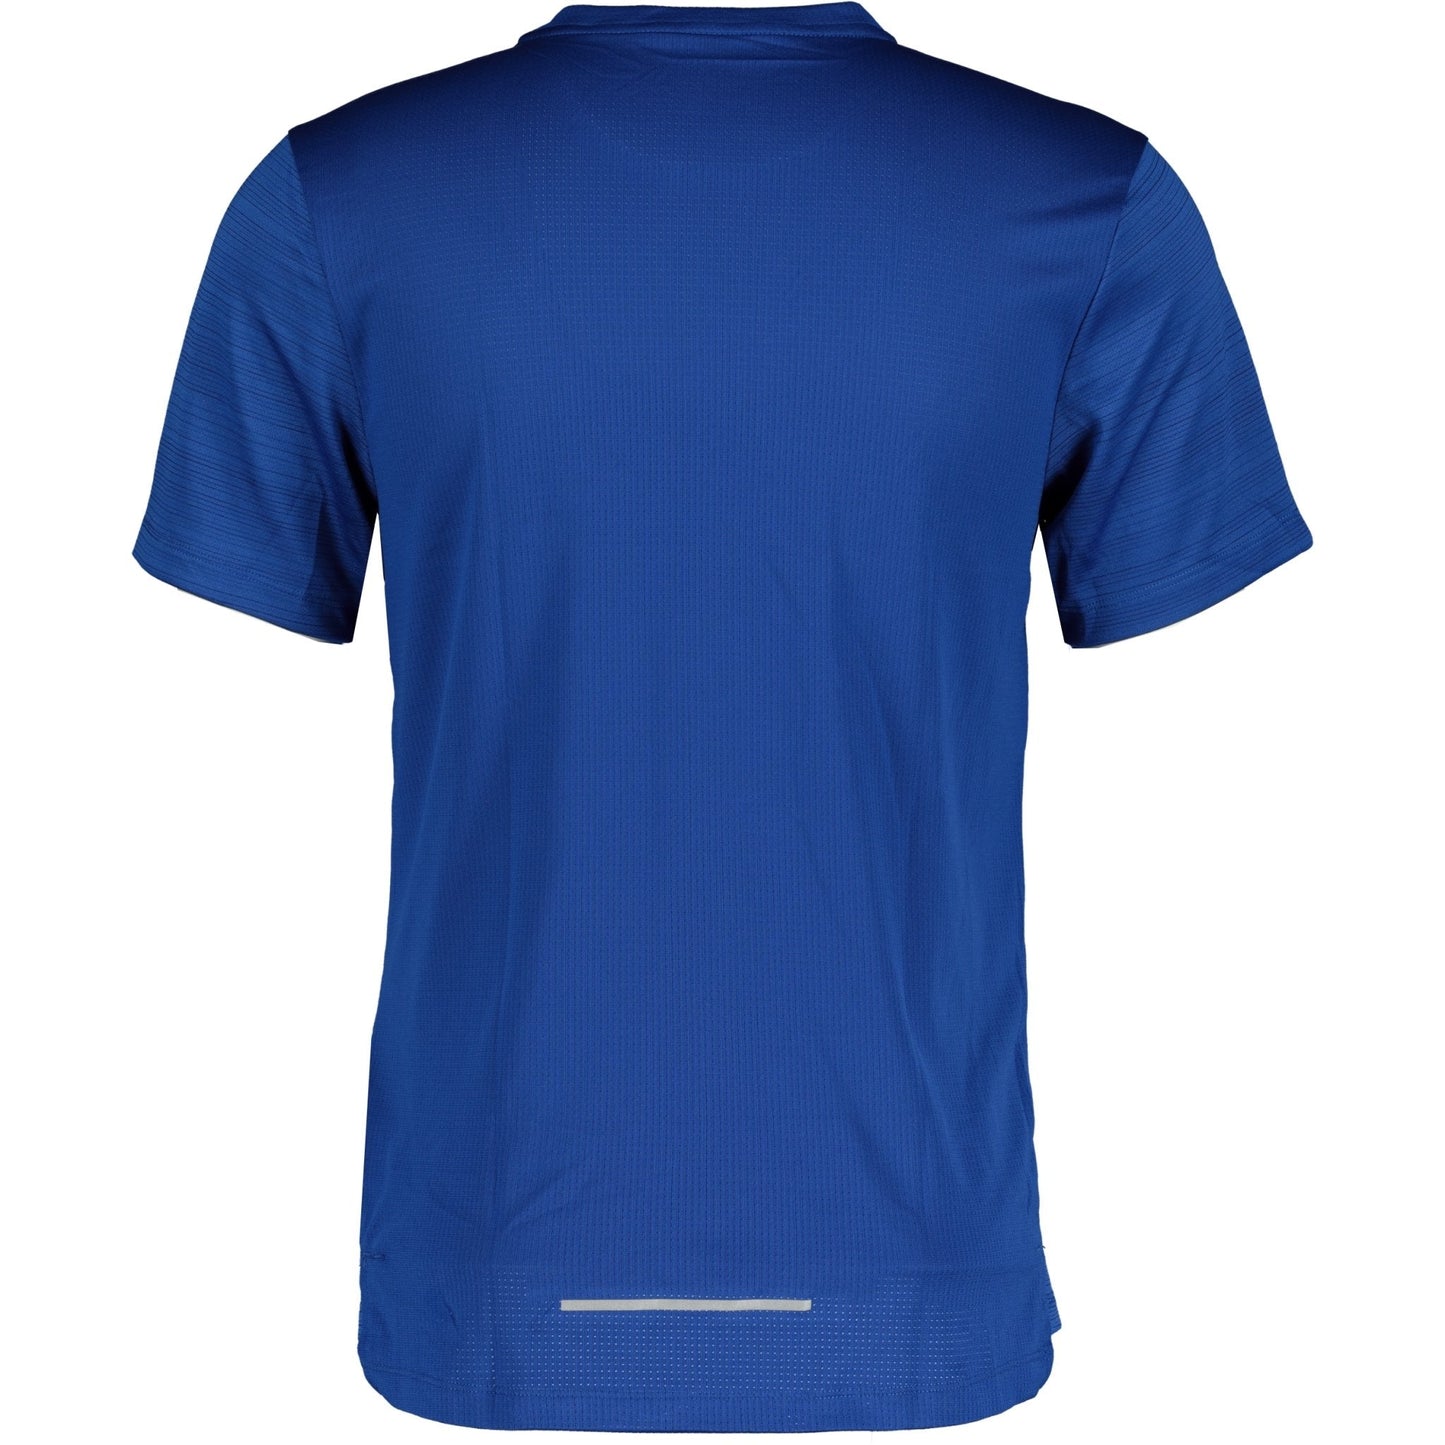 Nike Dri-Fit Breathe T-Shirt Blue - LinkFashionco